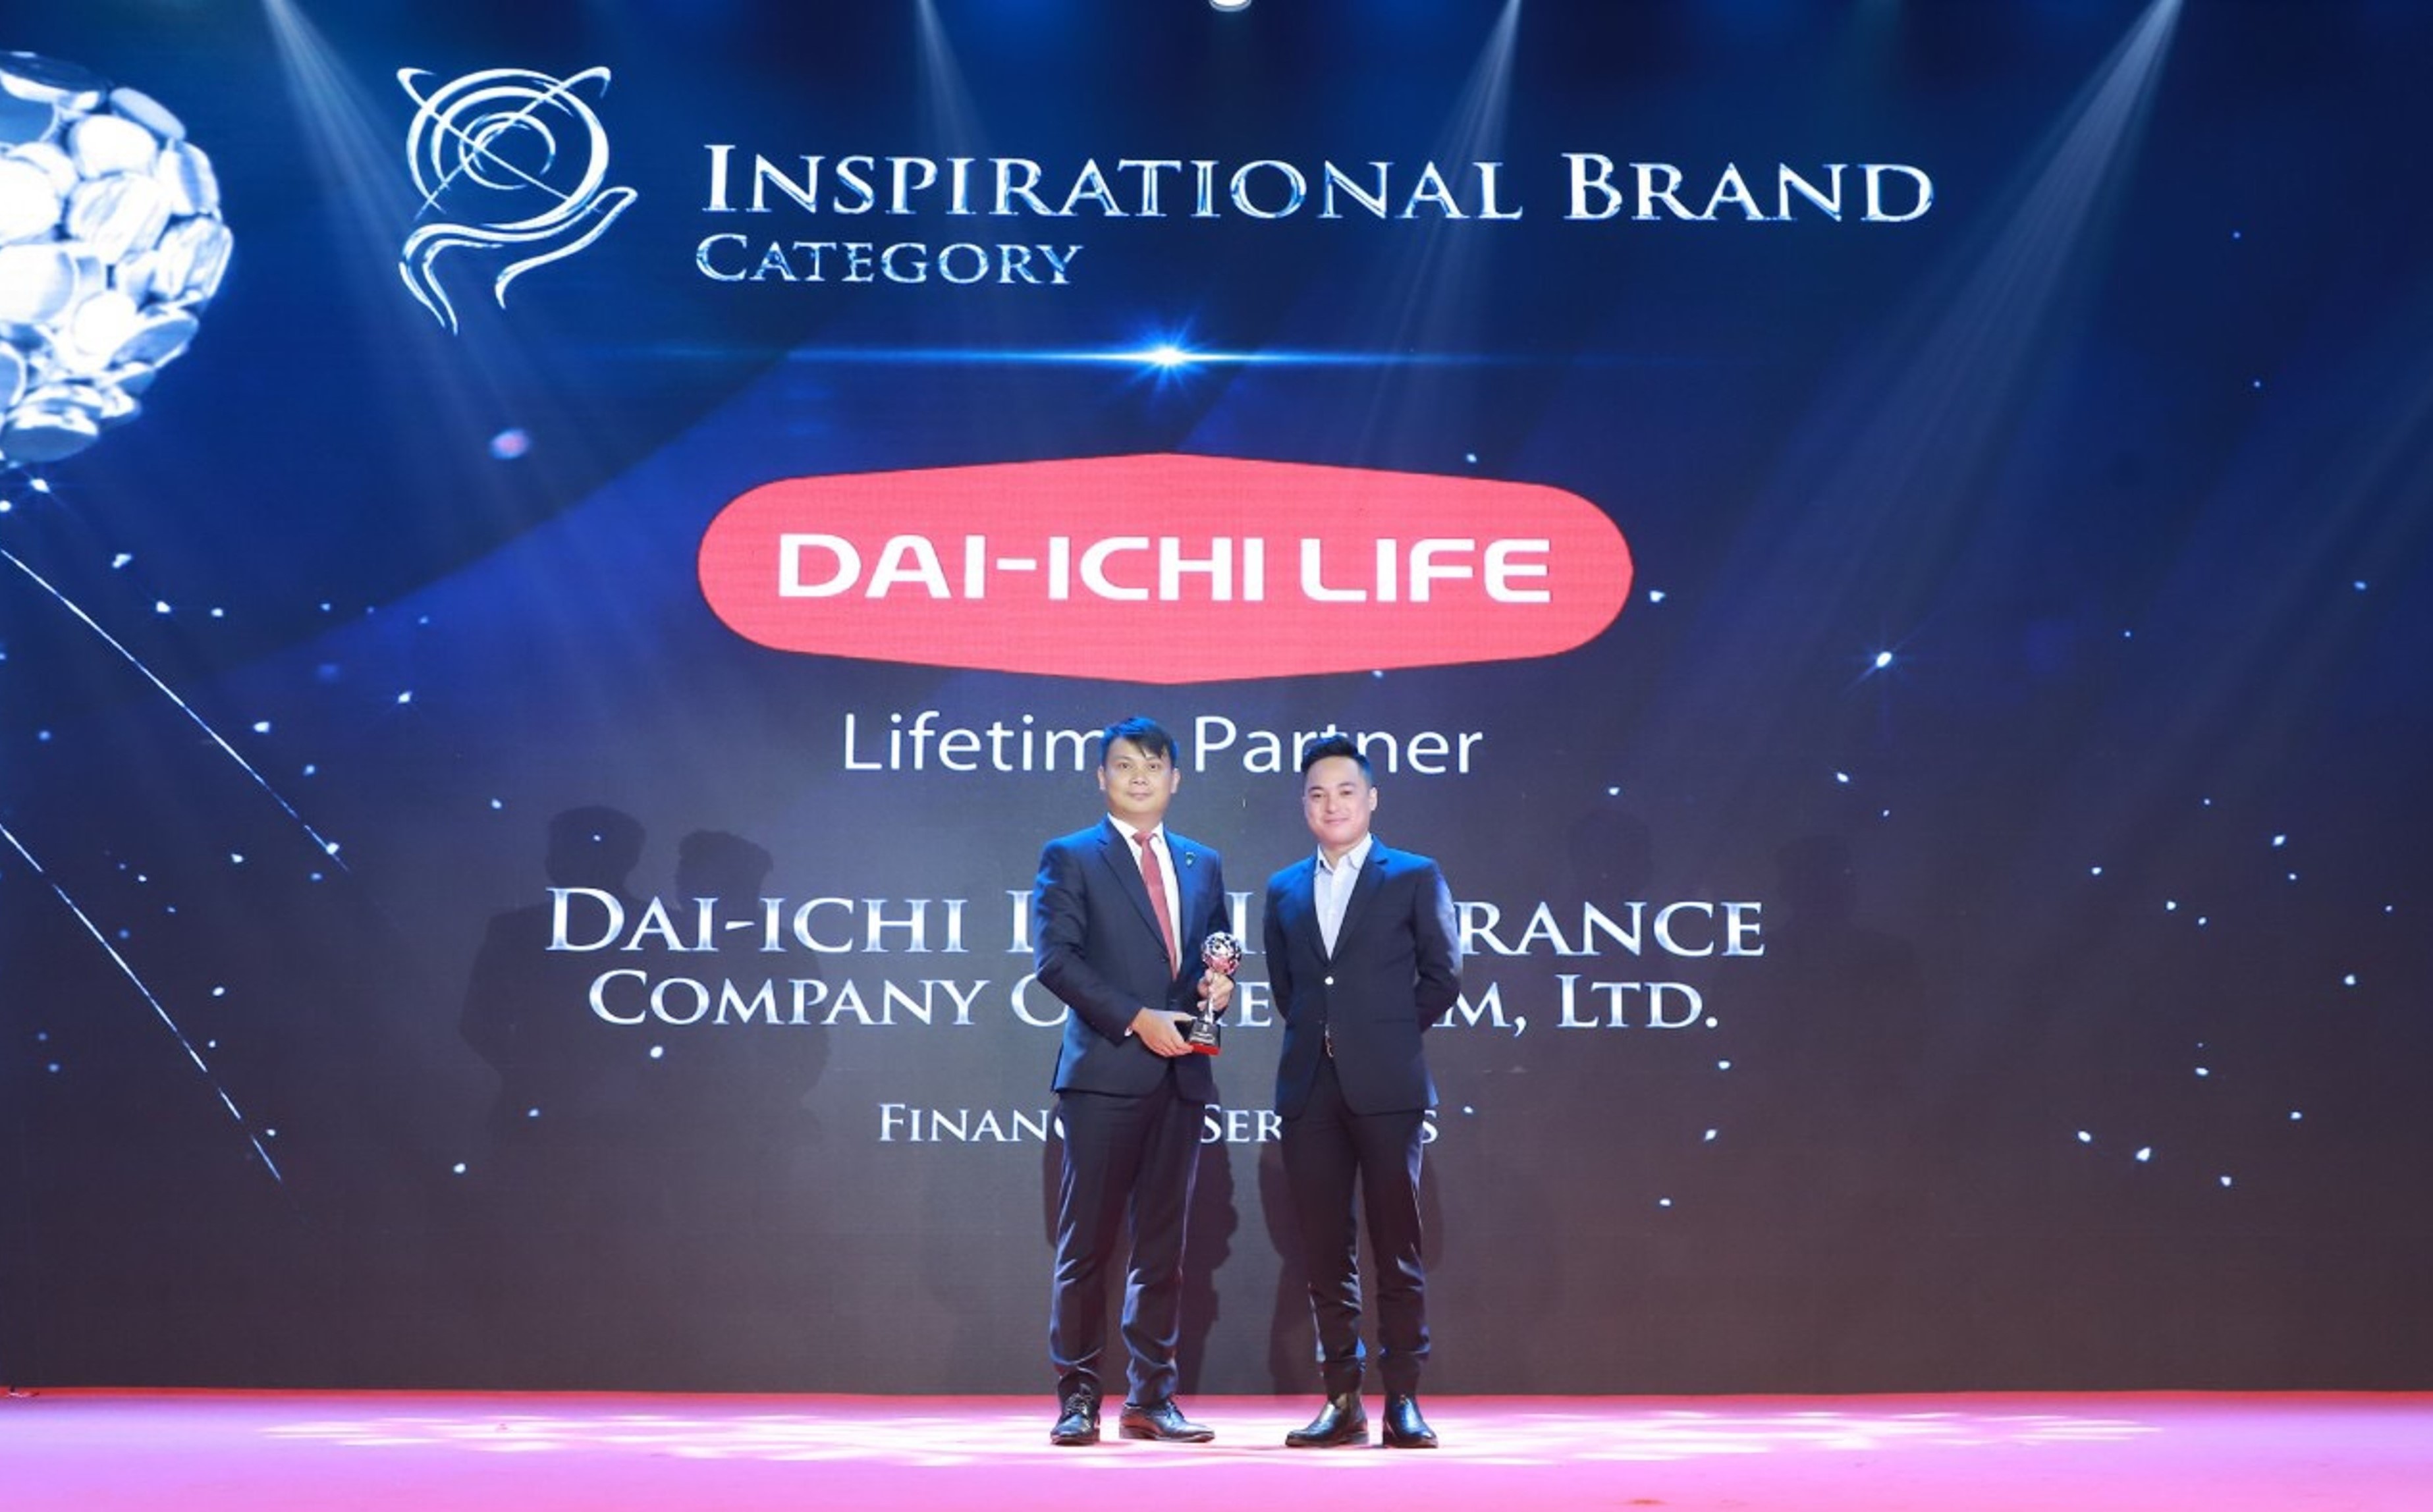   Ông Đặng Hồng Hải - Phó Tổng Giám đốc Điều hành Dai-ichi Life Việt Nam (trái) nhận giải "Thương hiệu truyền cảm hứng" ("Inspirational Brand")